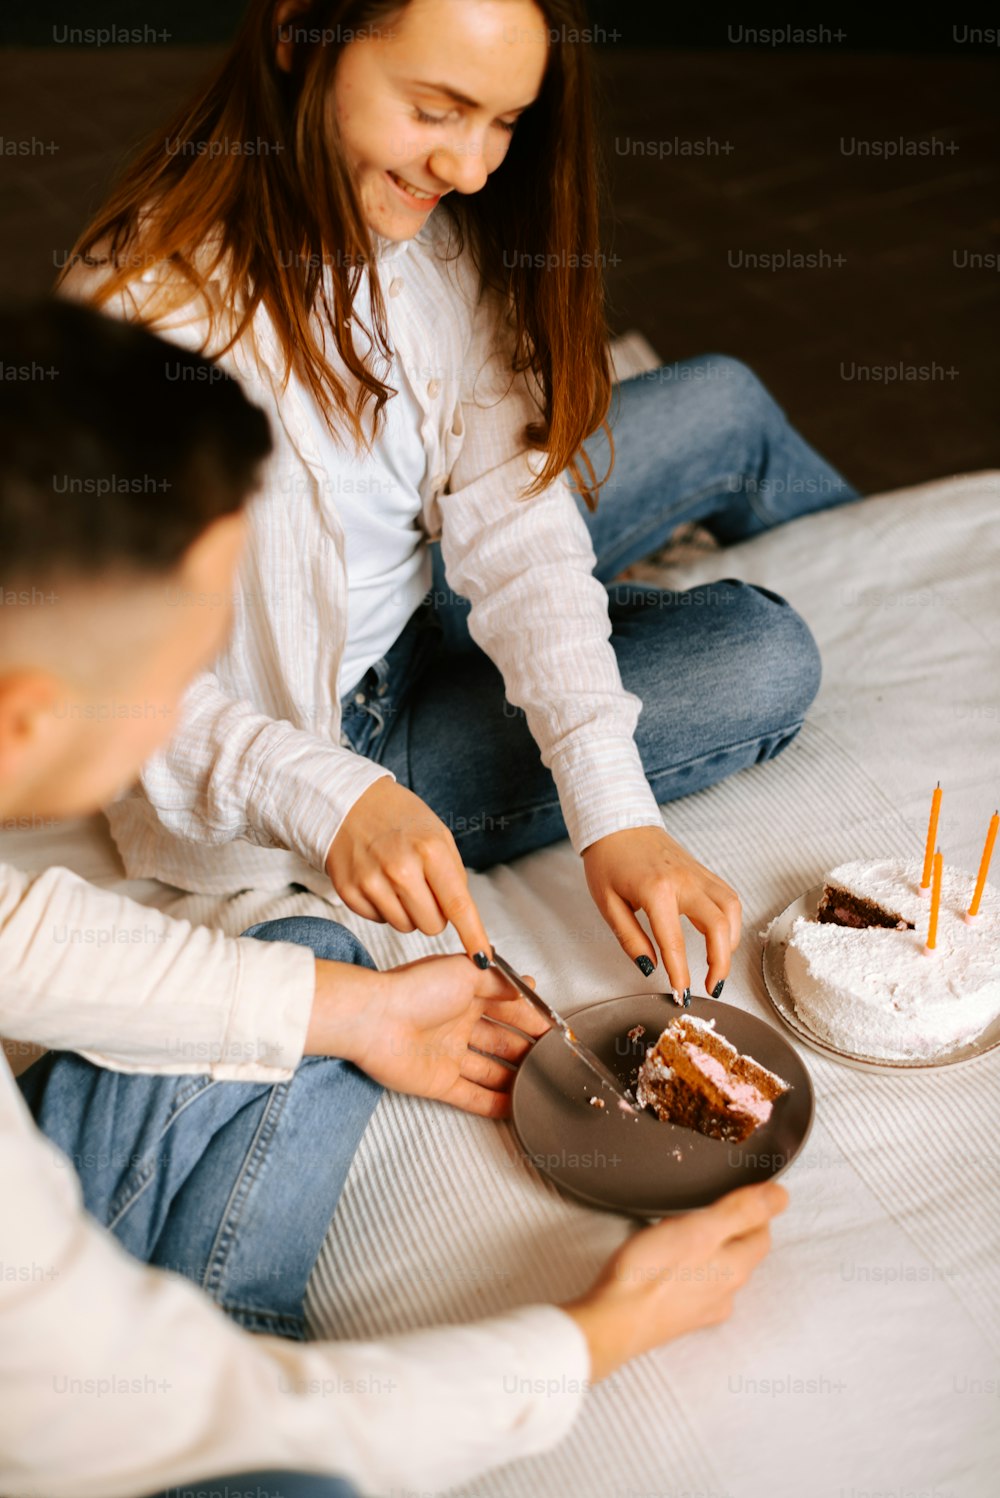 Ein Mann und eine Frau sitzen auf einem Bett und schneiden einen Kuchen